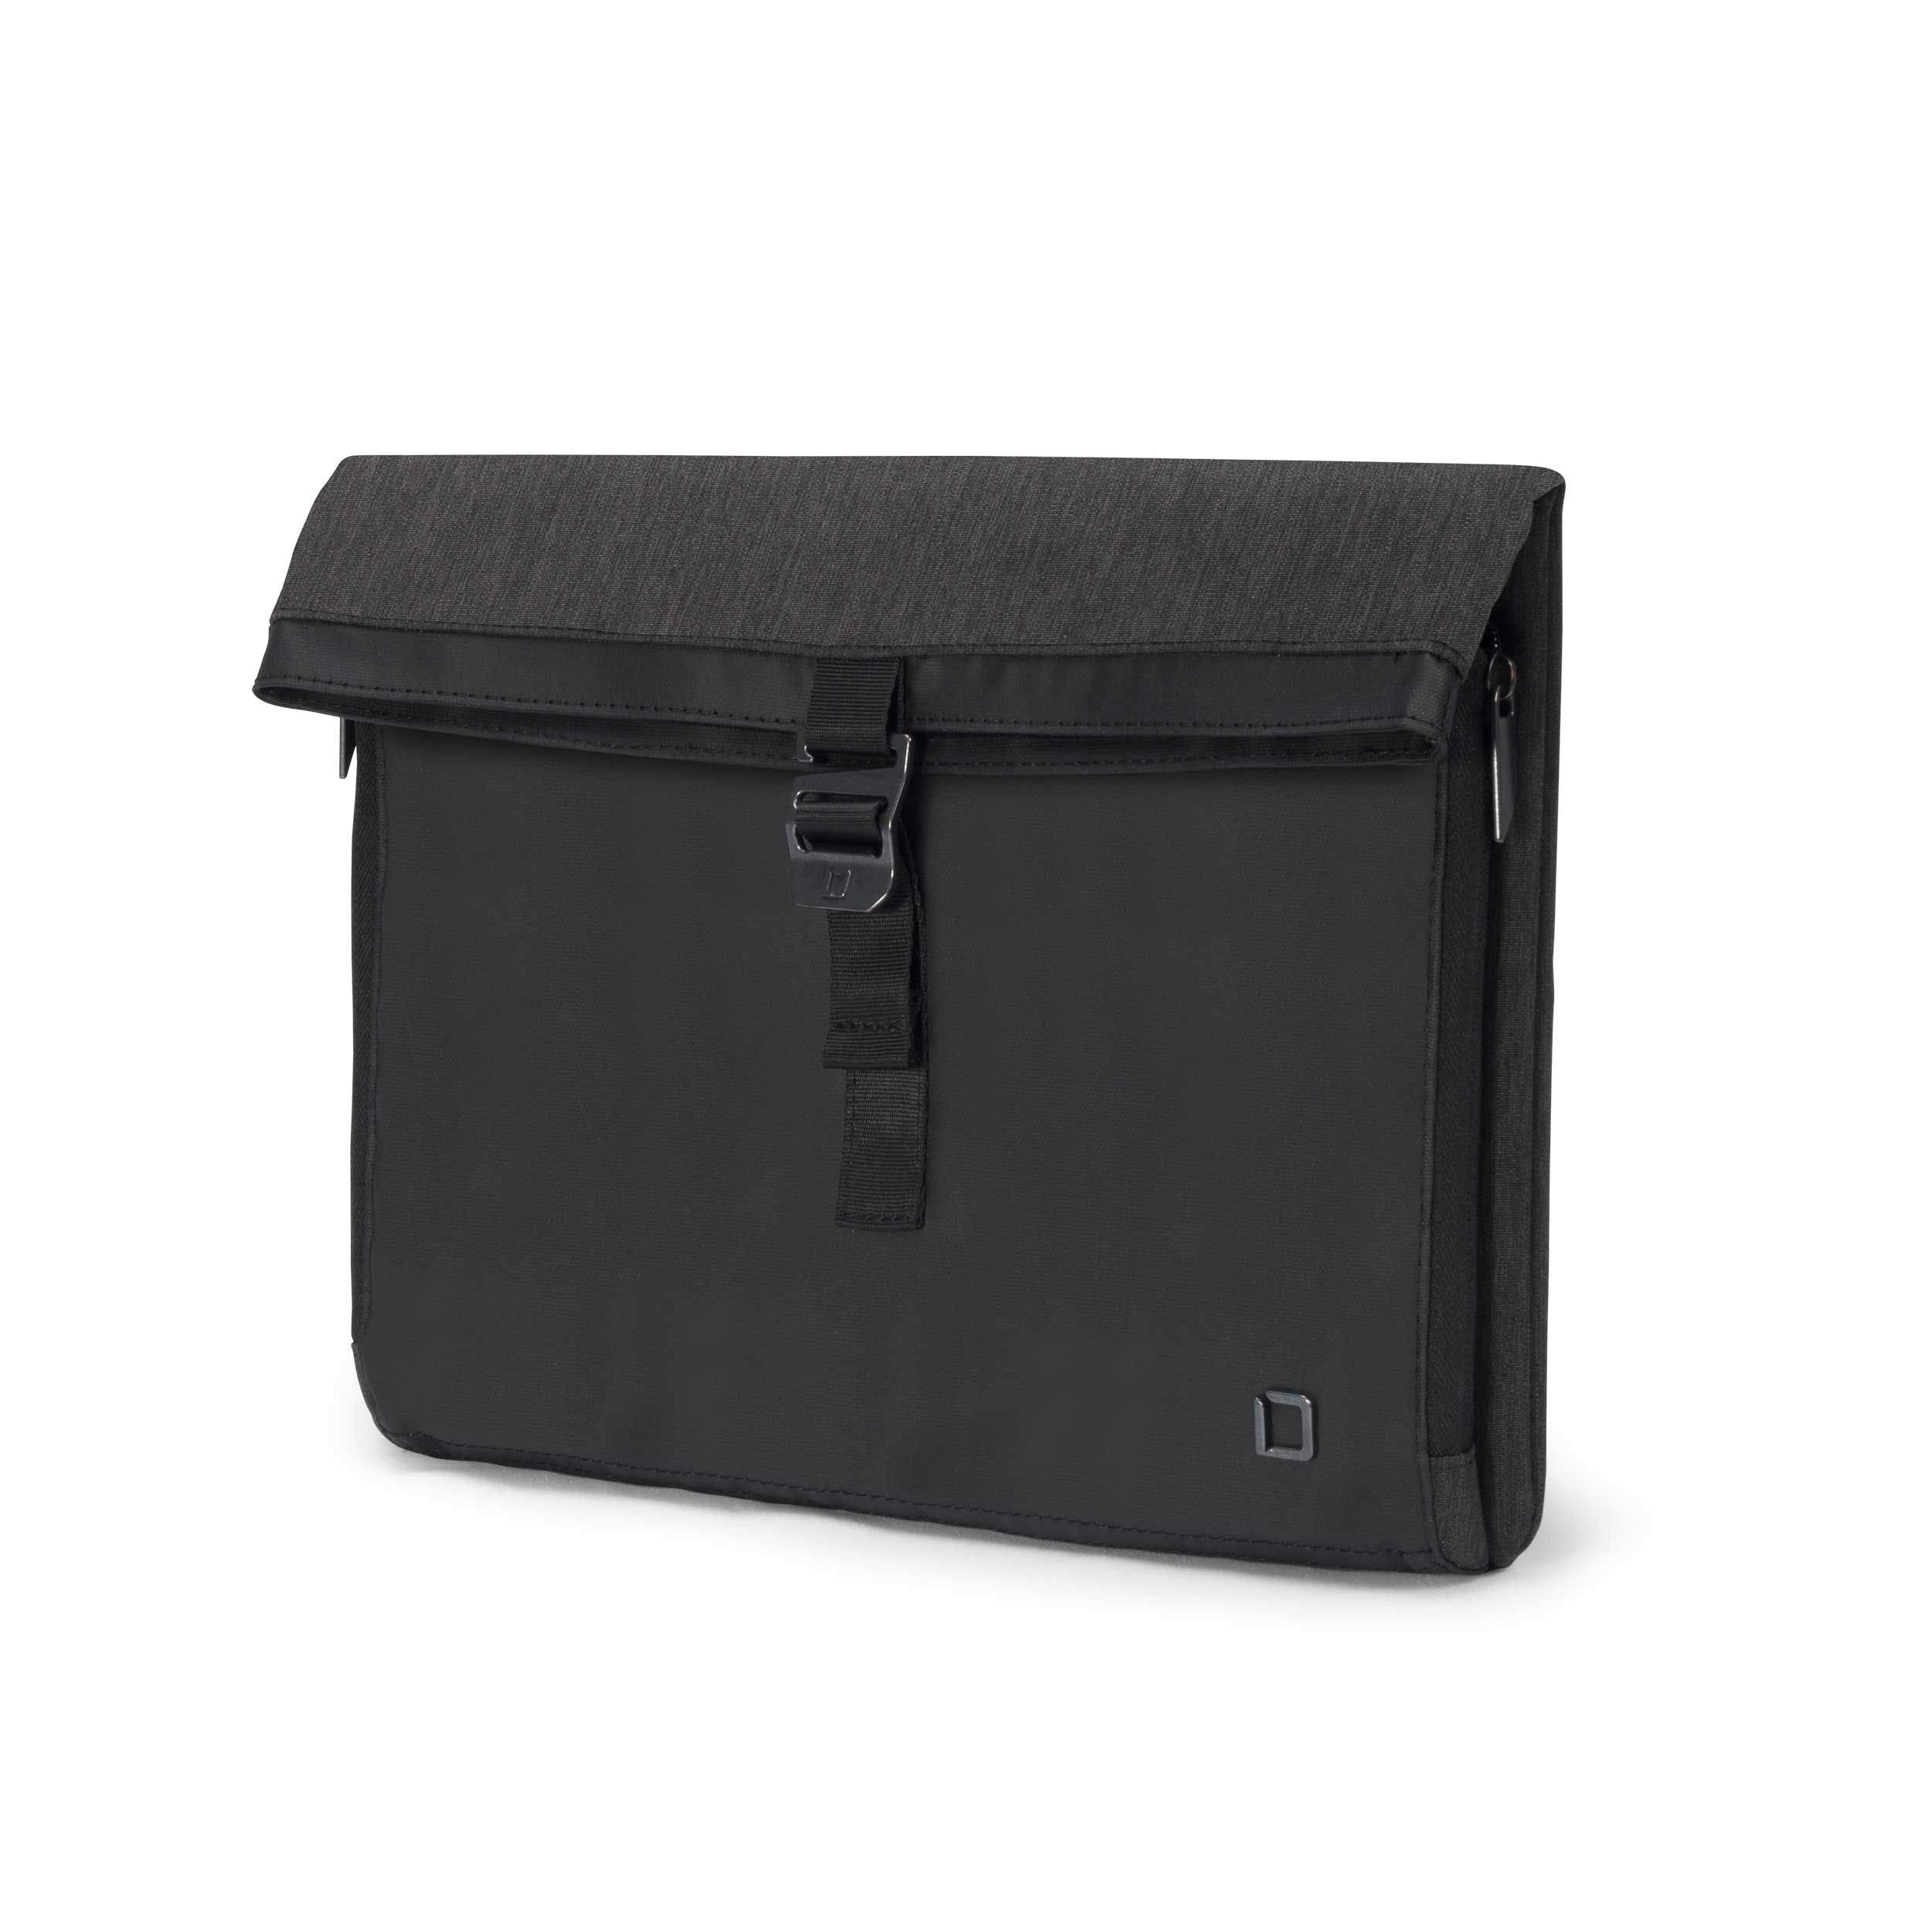 DICOTA Skin Plus STYLE Notebooktasche – Laptop-Hülle für zuverlässigen Schutz, modernes Design, 11-12,5 Zoll, schwarz